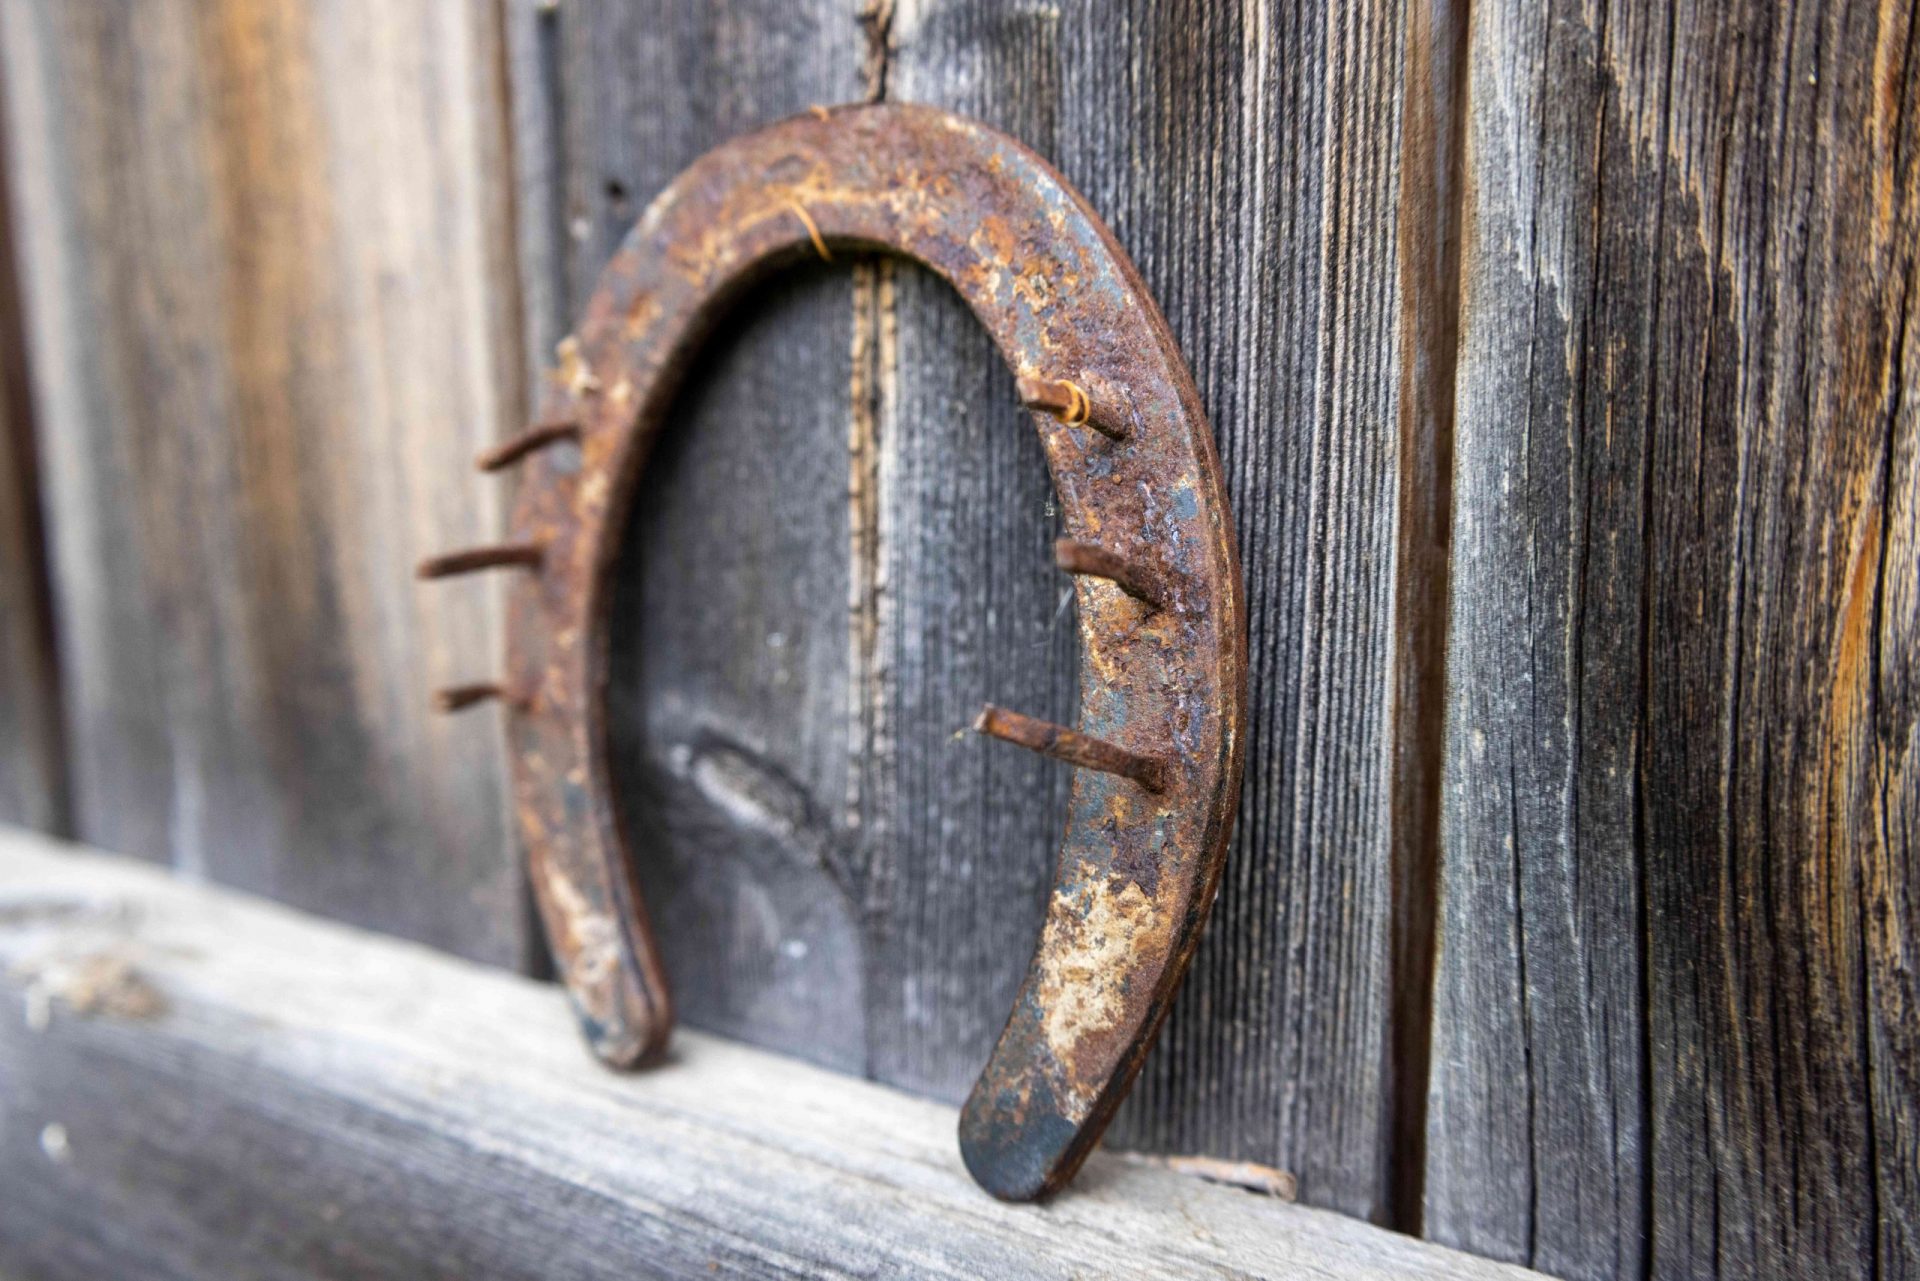 vieja herradura oxidada apoyada en una valla de madera